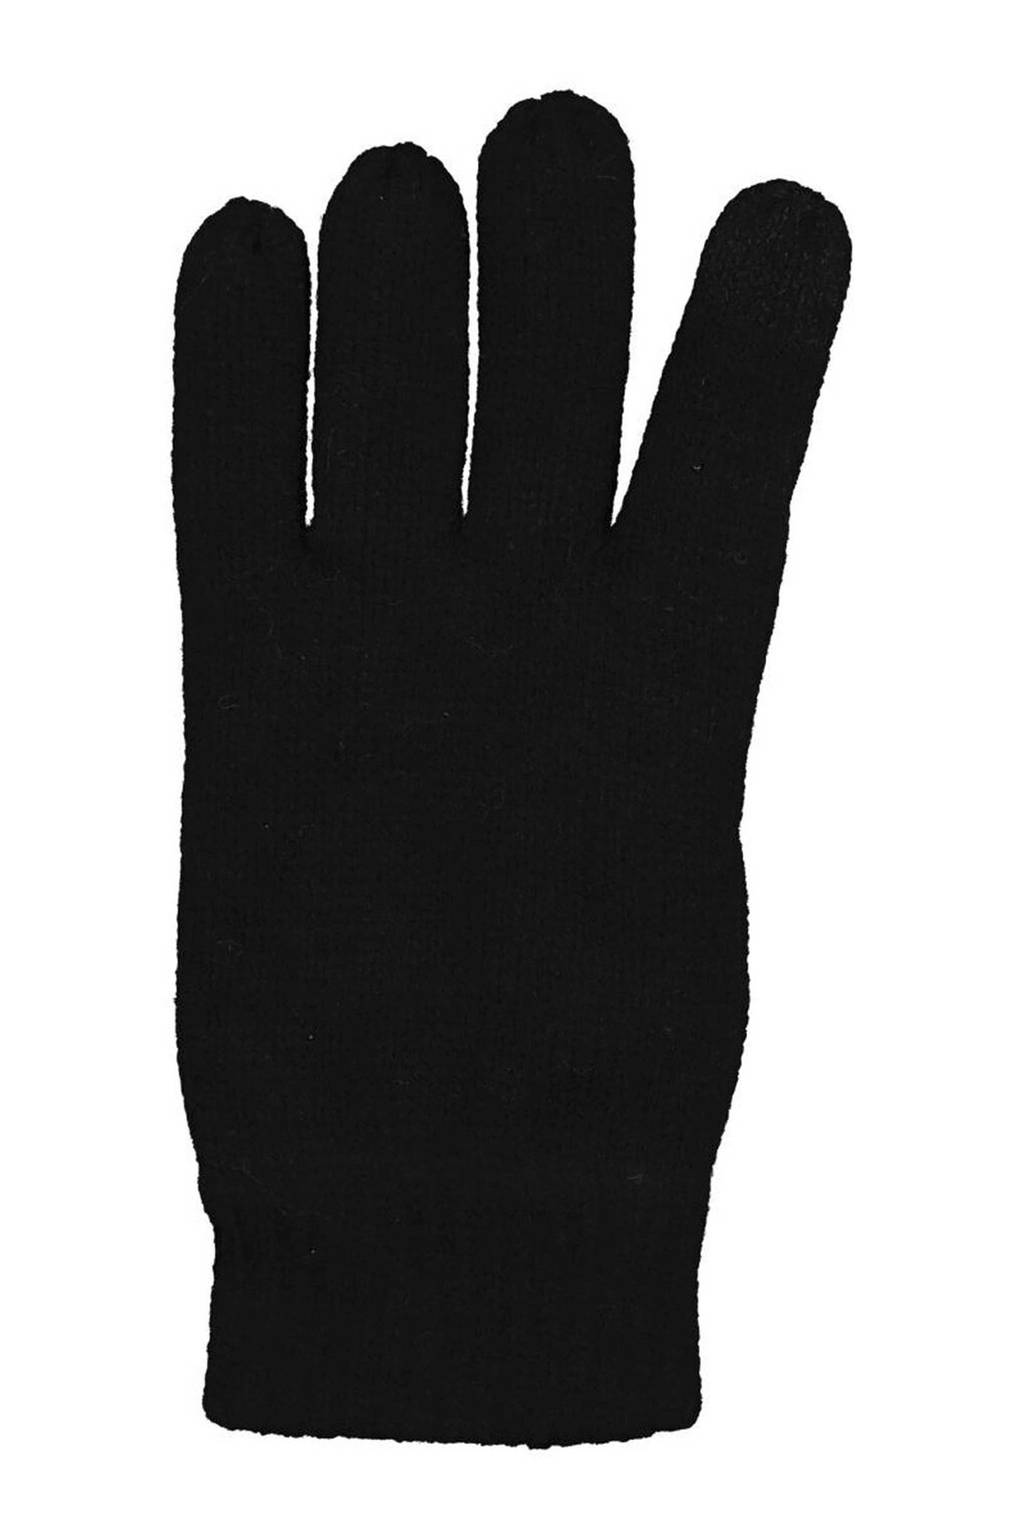 Retentie vee film HEMA kinderhandschoenen touchscreen zwart | wehkamp